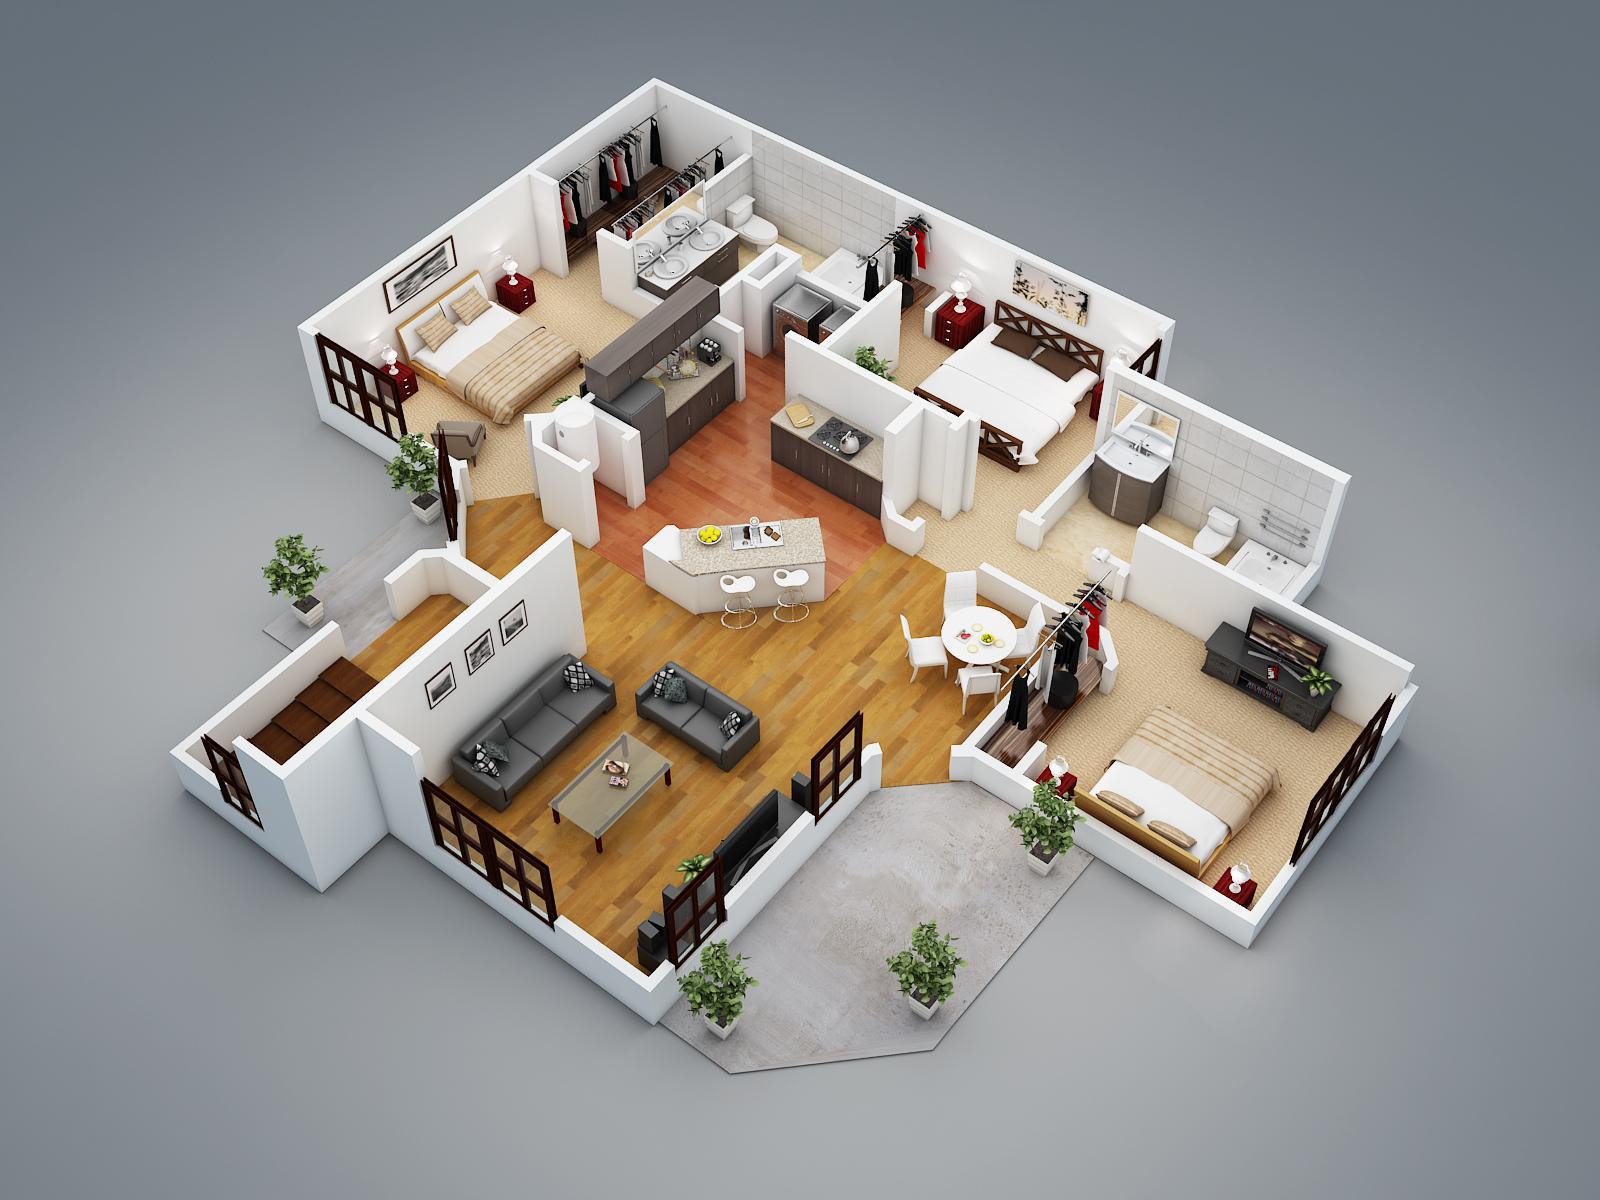 Architecture plan. Floorplan 3d проекты. Дом Floorplan 3d. Интересные планировки домов. Макеты домов.